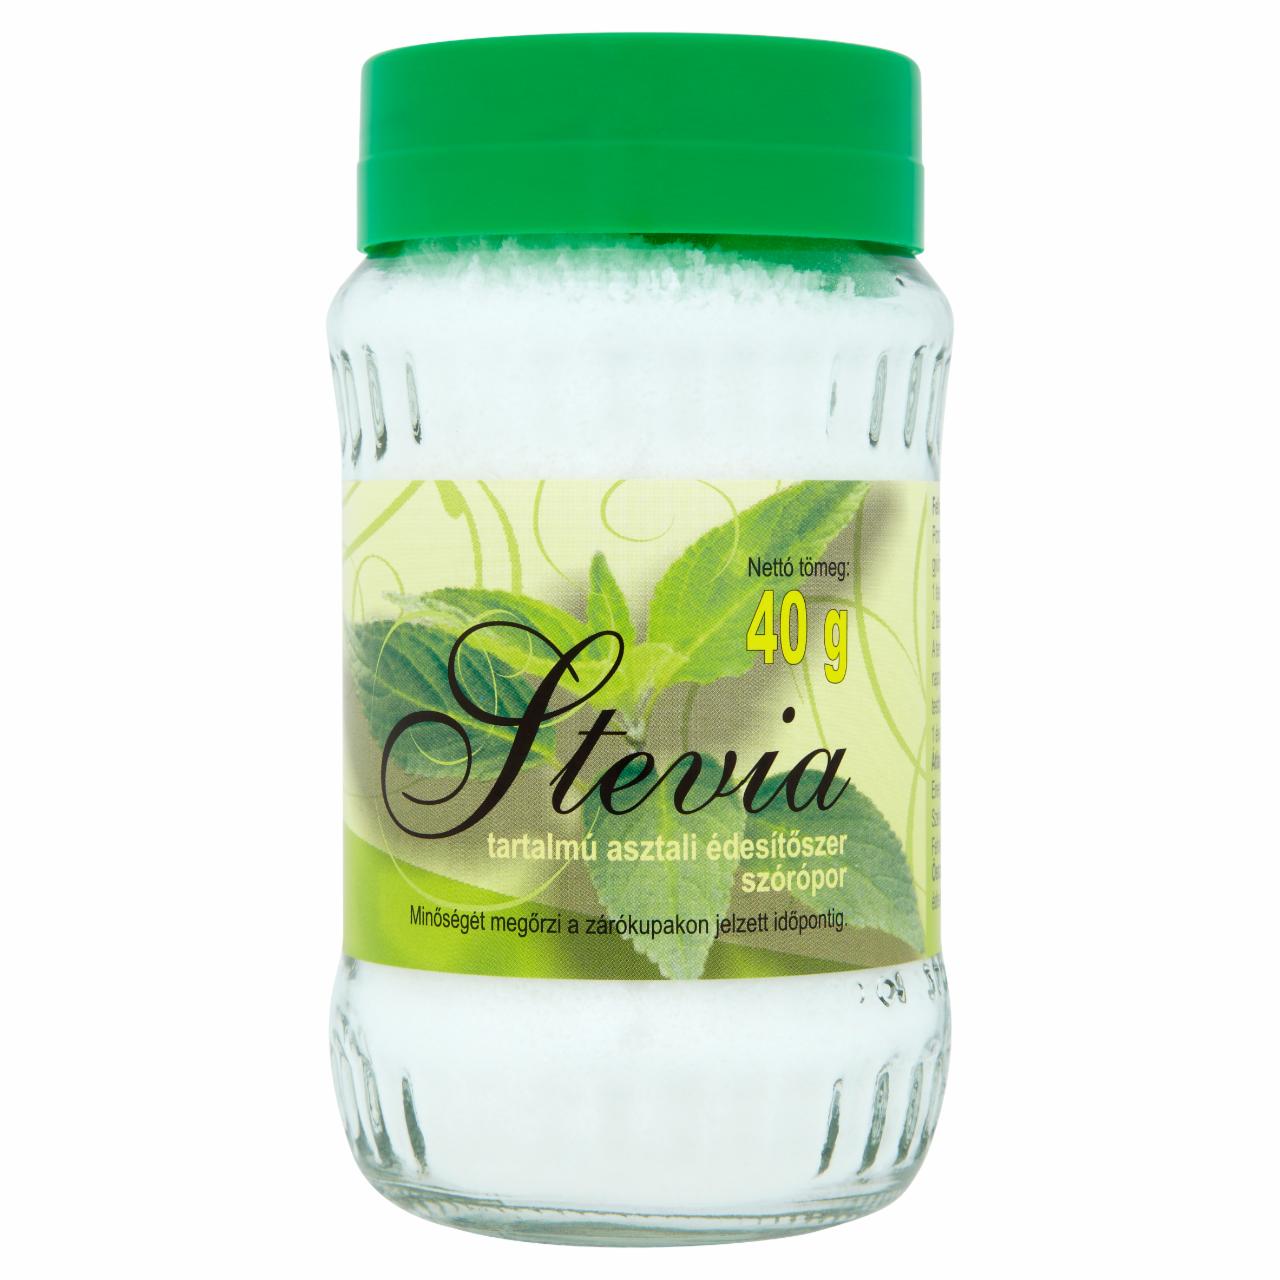 Képek - Stevia tartalmú asztali édesítőszer szórópor 40 g